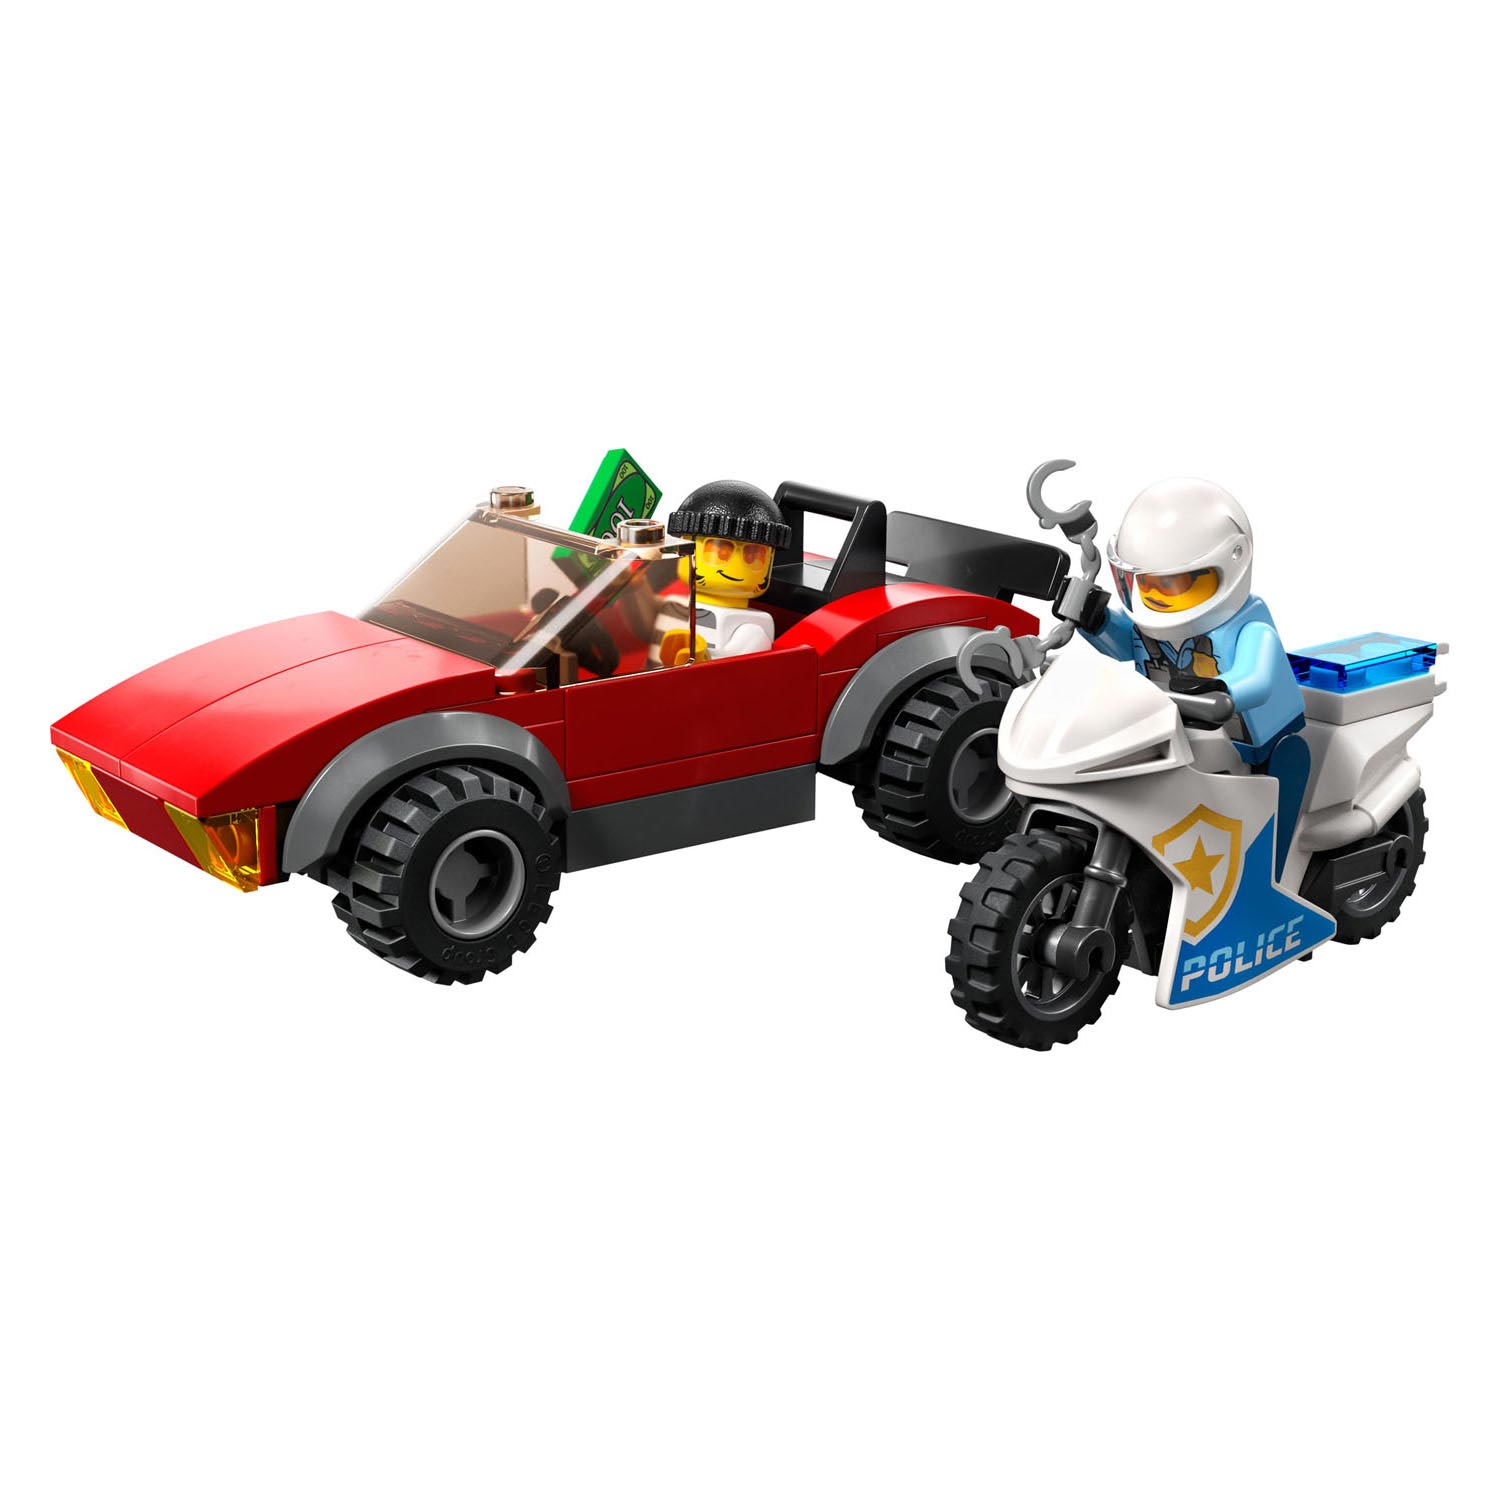 LEGO City 60392 Verfolgungsjagd auf einem Polizeimotorrad